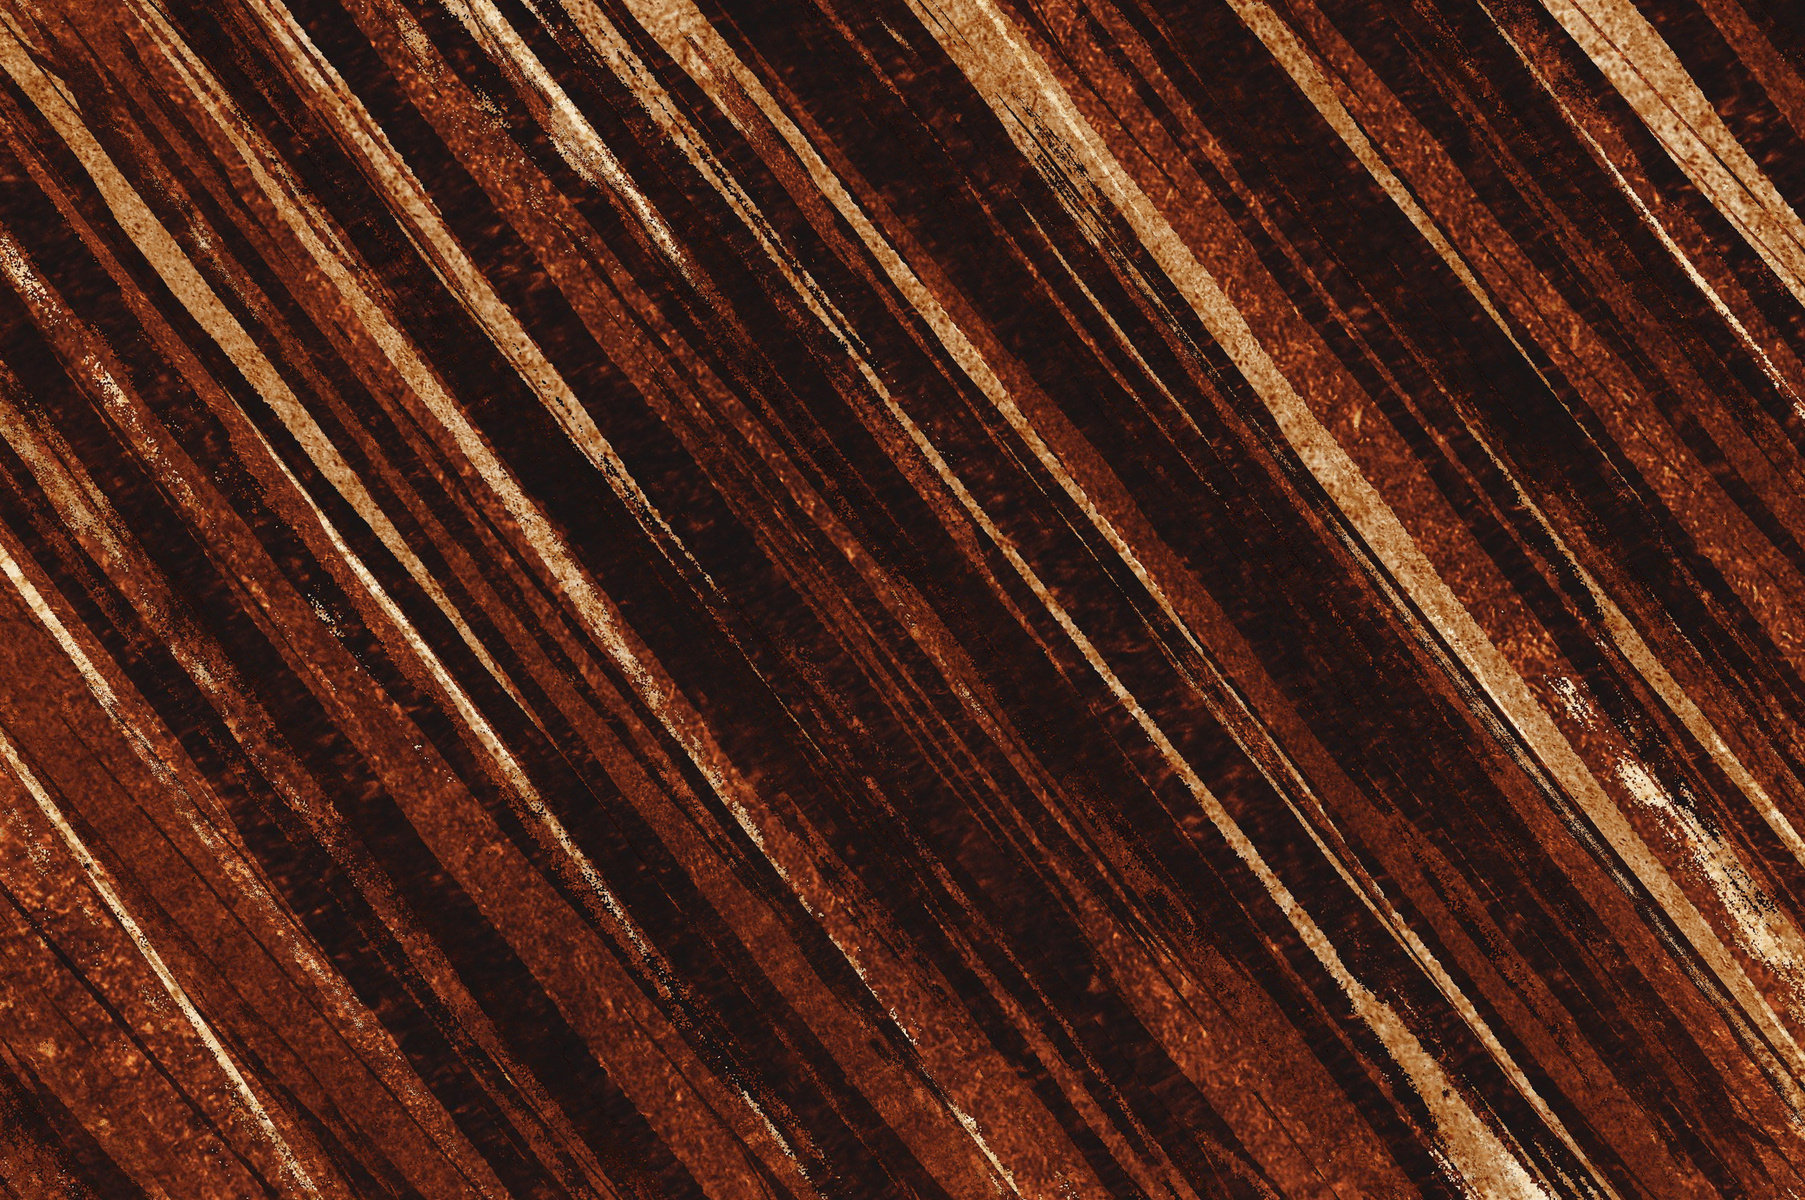 grunge brown pattern background